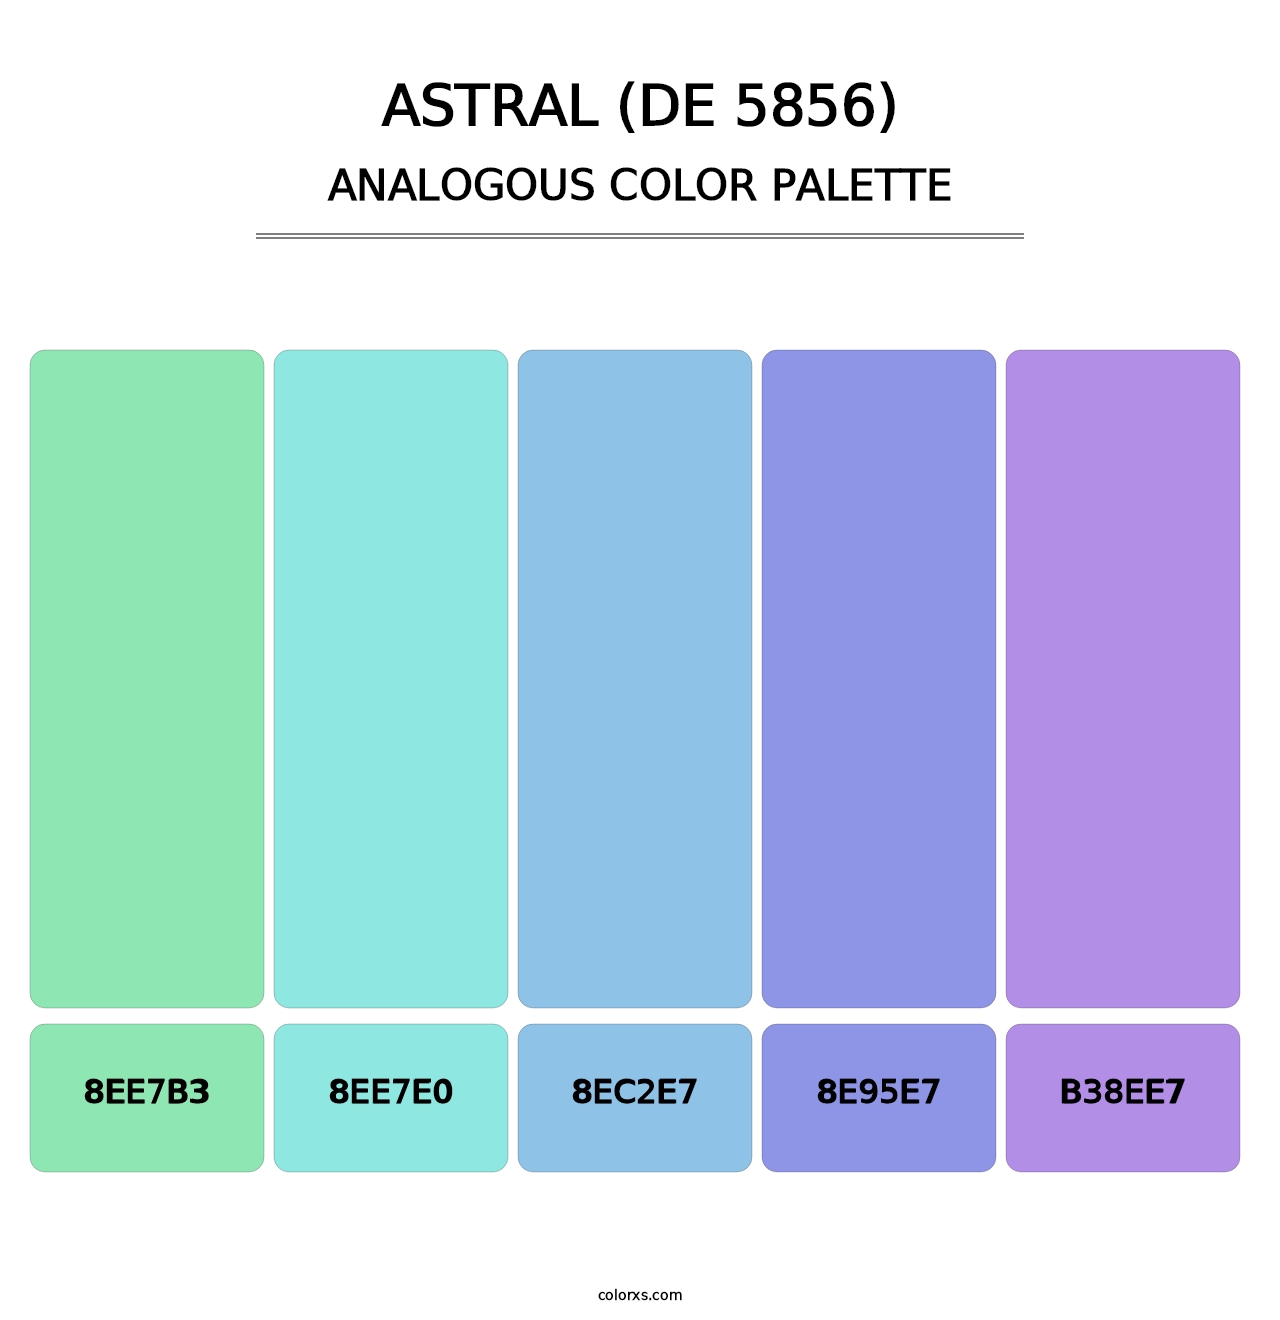 Astral (DE 5856) - Analogous Color Palette